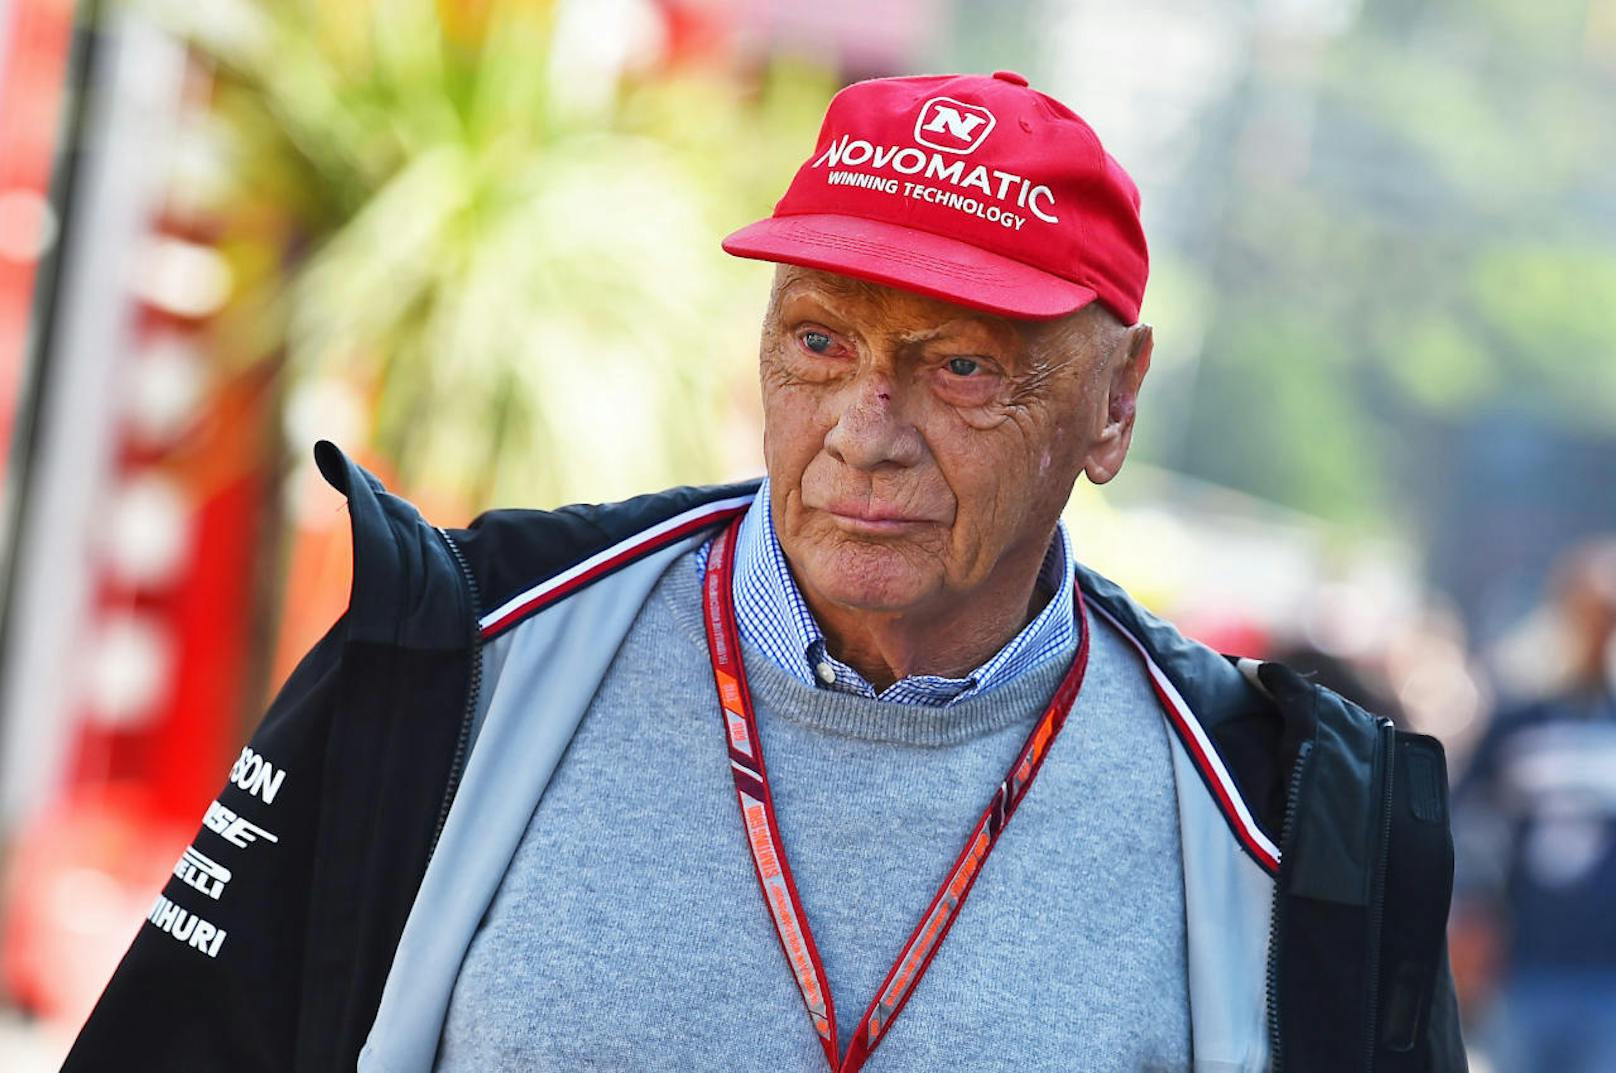 Am 2. August 2018 der Schock! Niki Lauda musste im Wiener AKH eine neue Lunge transplantiert werden. Er schwebte lange in Lebensgefahr. Sein altes Leben musste Lauda aufgeben, zu den vielen verbotenen Dingen zählten auch Fliegen und Stress.